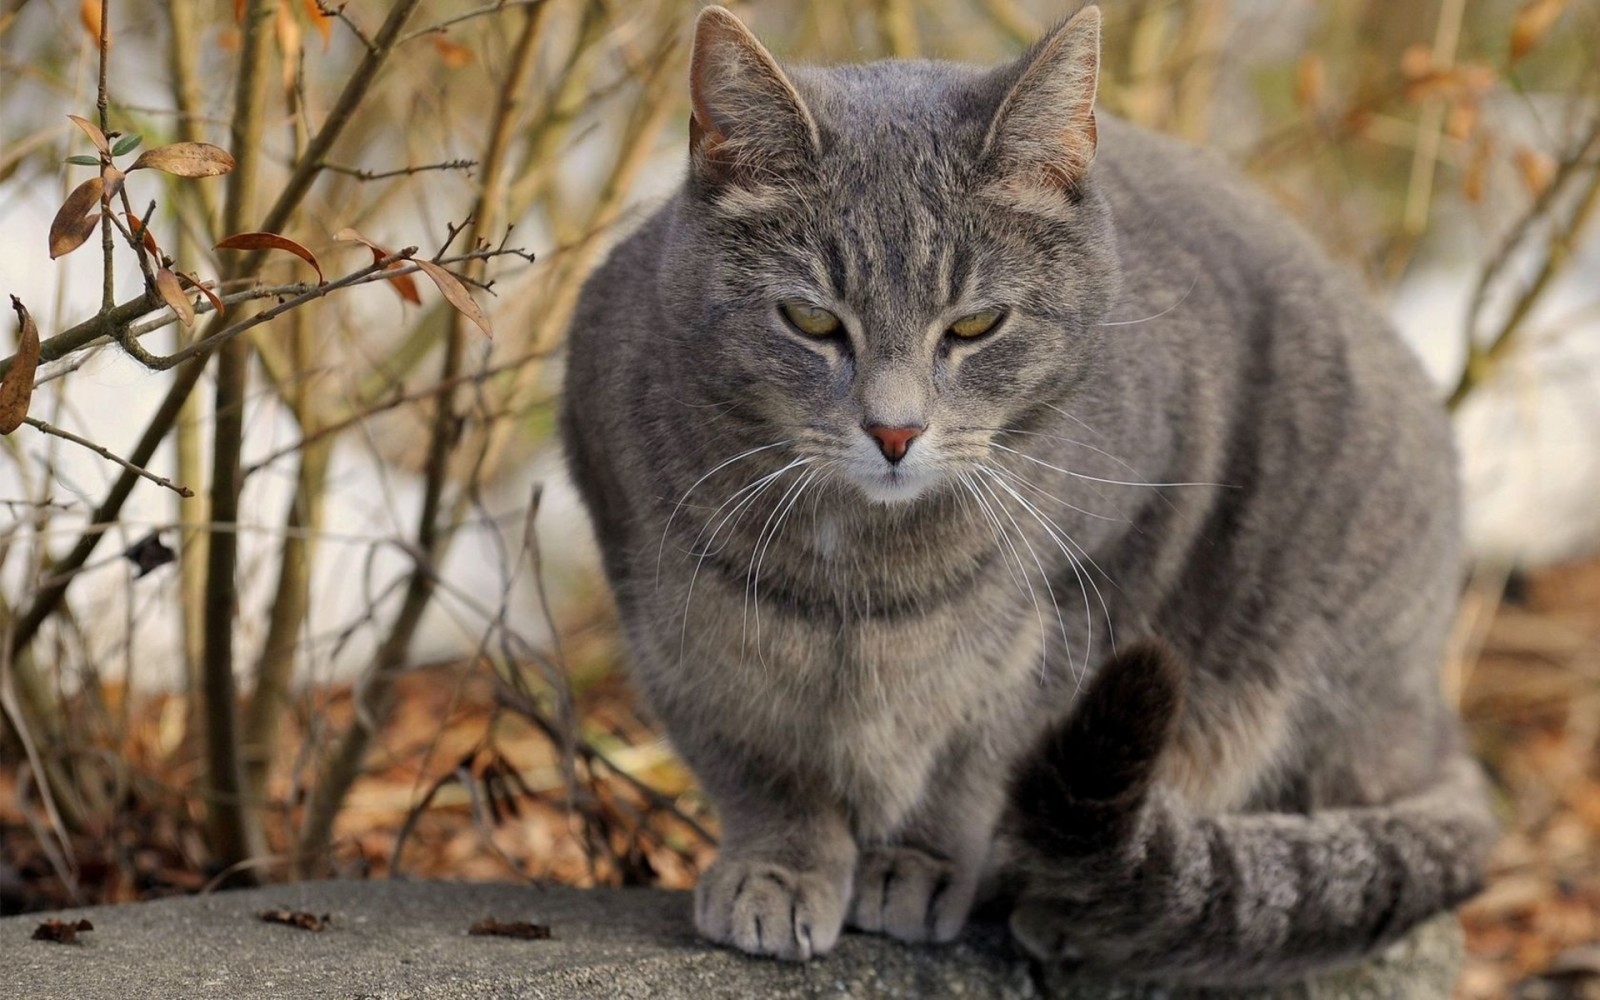 Bayern: Mann schlägt Katze mit Besen, Tier fängt an zu bluten – Besitzerin kommt dazu und kriegt Schlag ins Gesicht